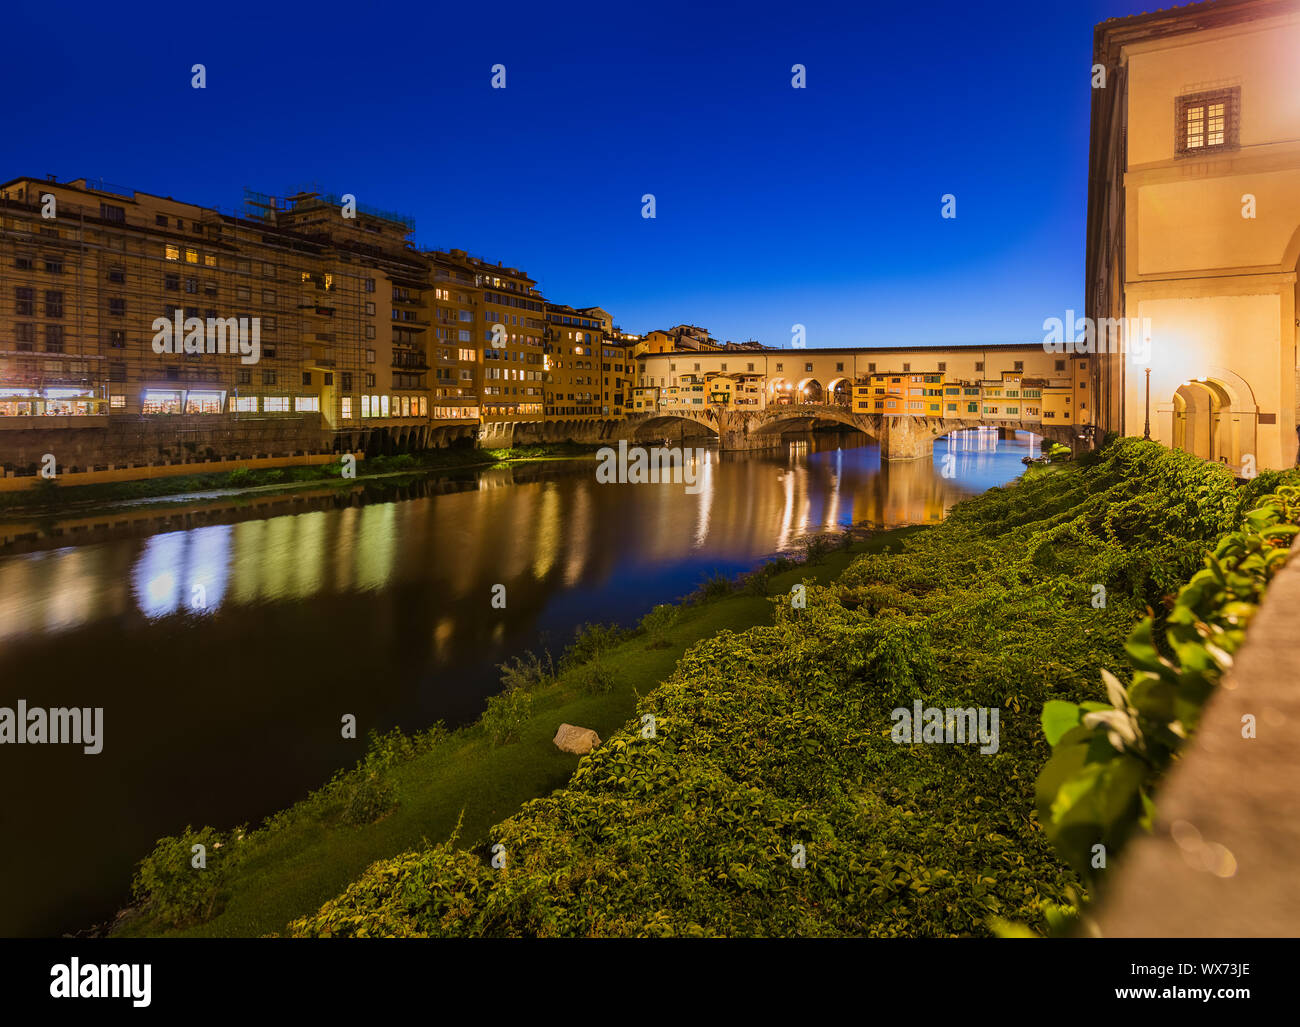 Bridge Ponte Vecchio in Florence - Italy Stock Photo